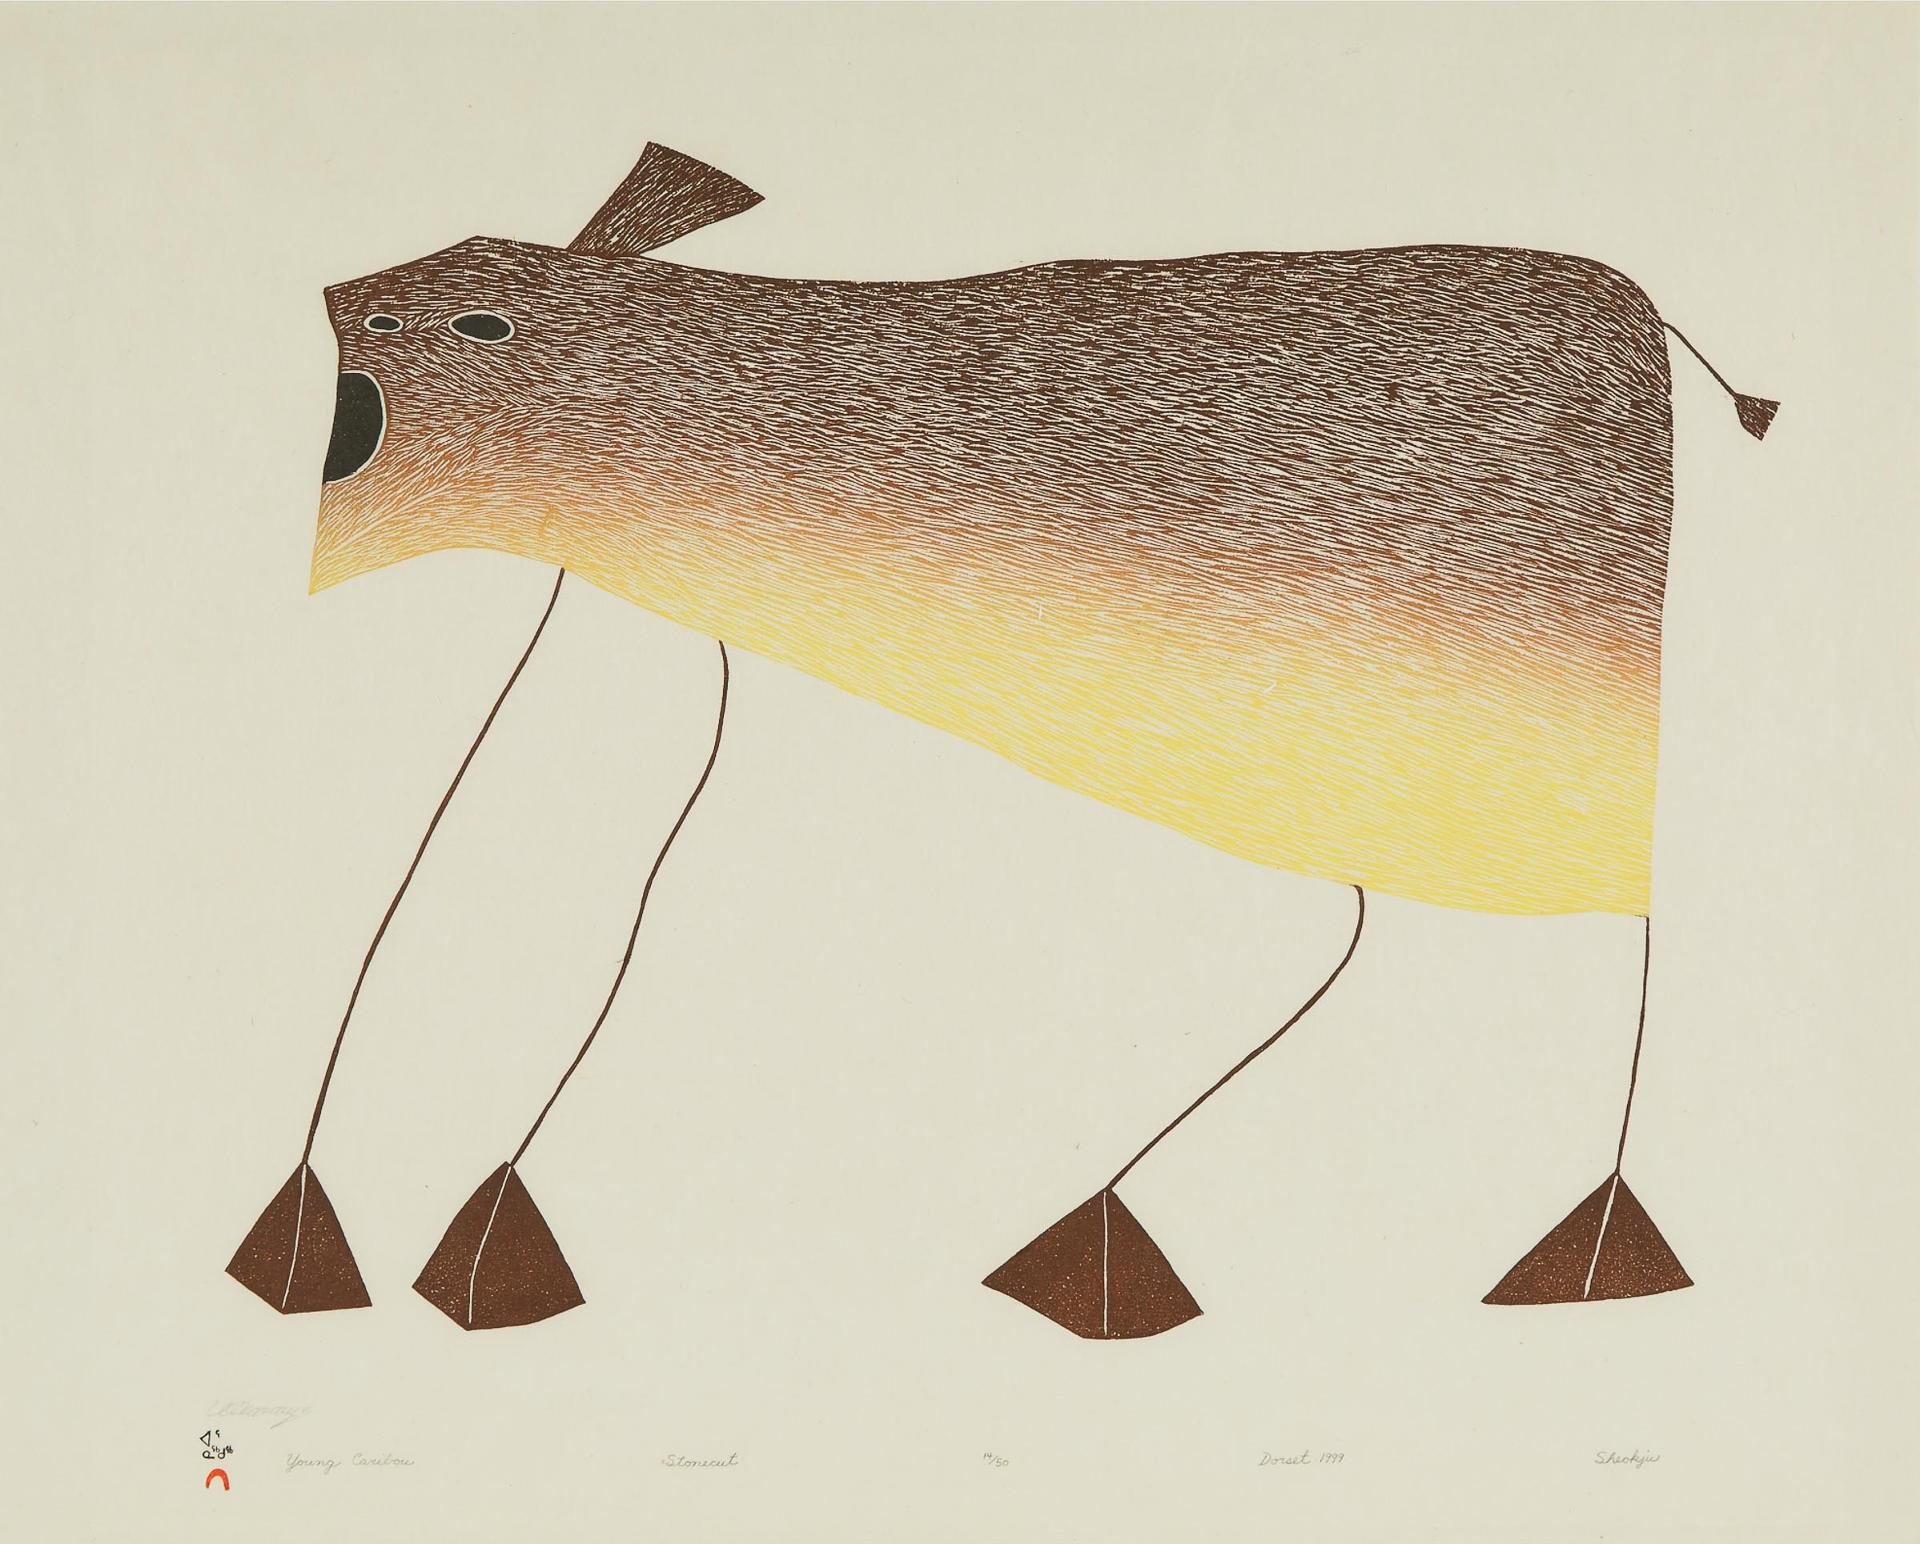 Sheojuk Etidlooie (1932-1999) - Young Caribou